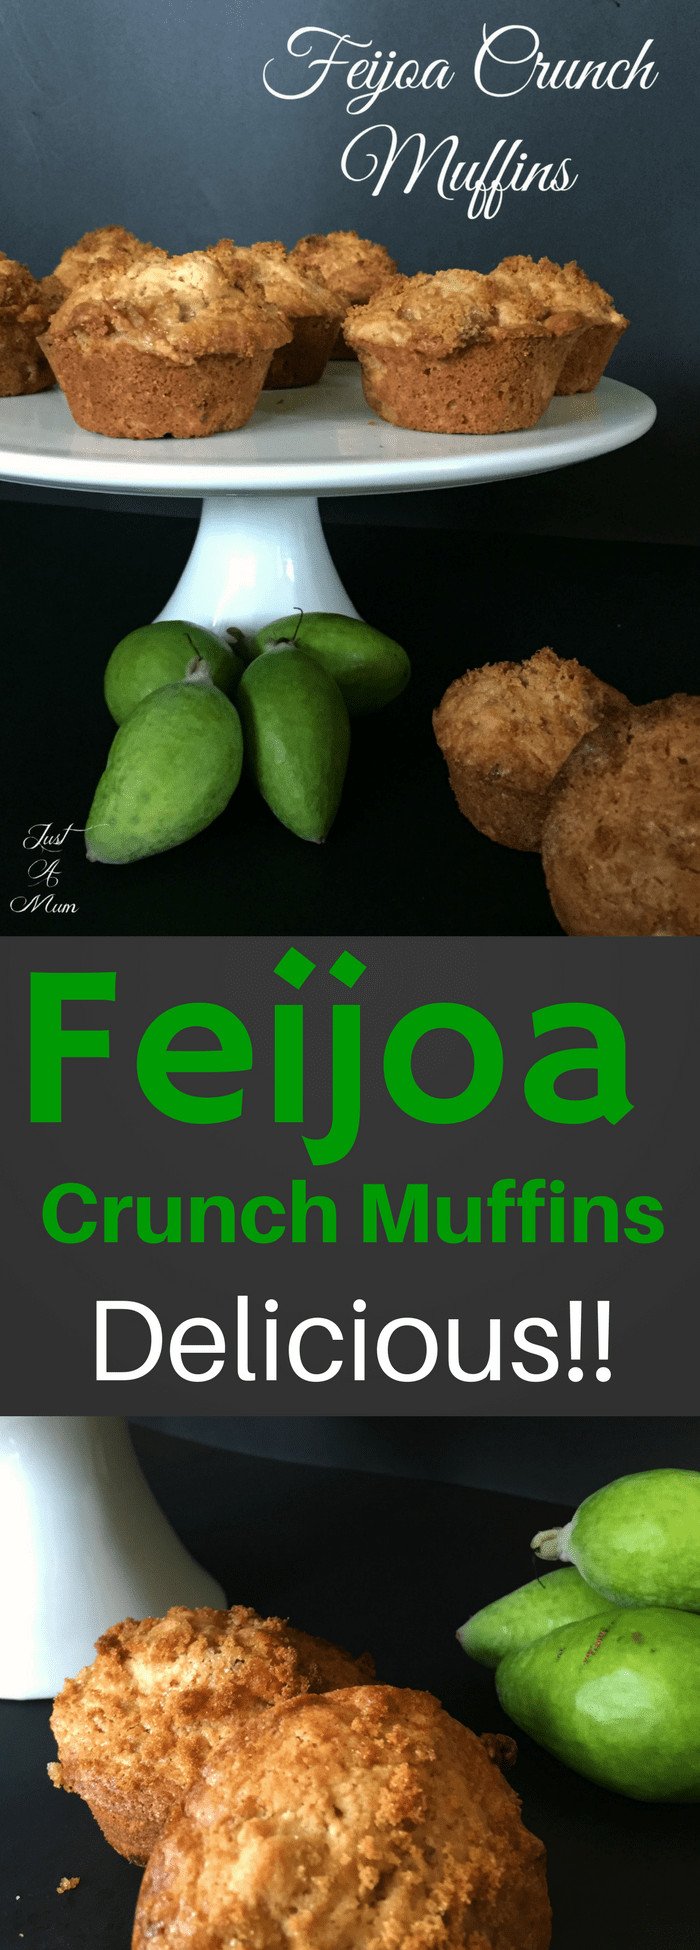 Just A Mum's Feijoa Crunch Muffins